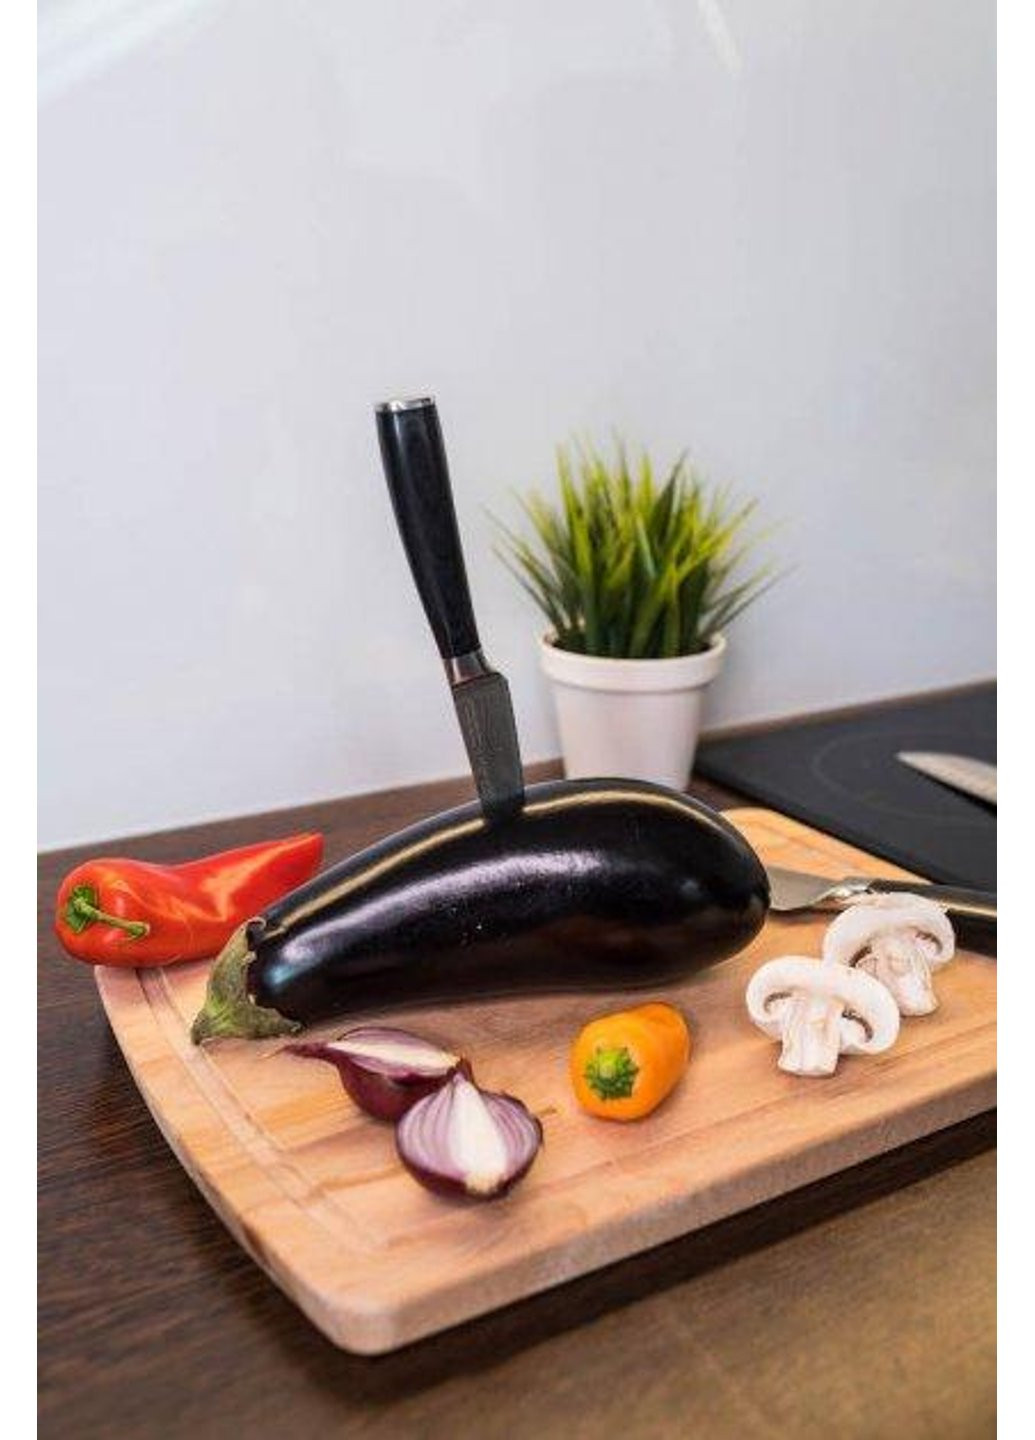 Нож для чистки овощей Milano BR-6201 9 см Bollire (254782811)